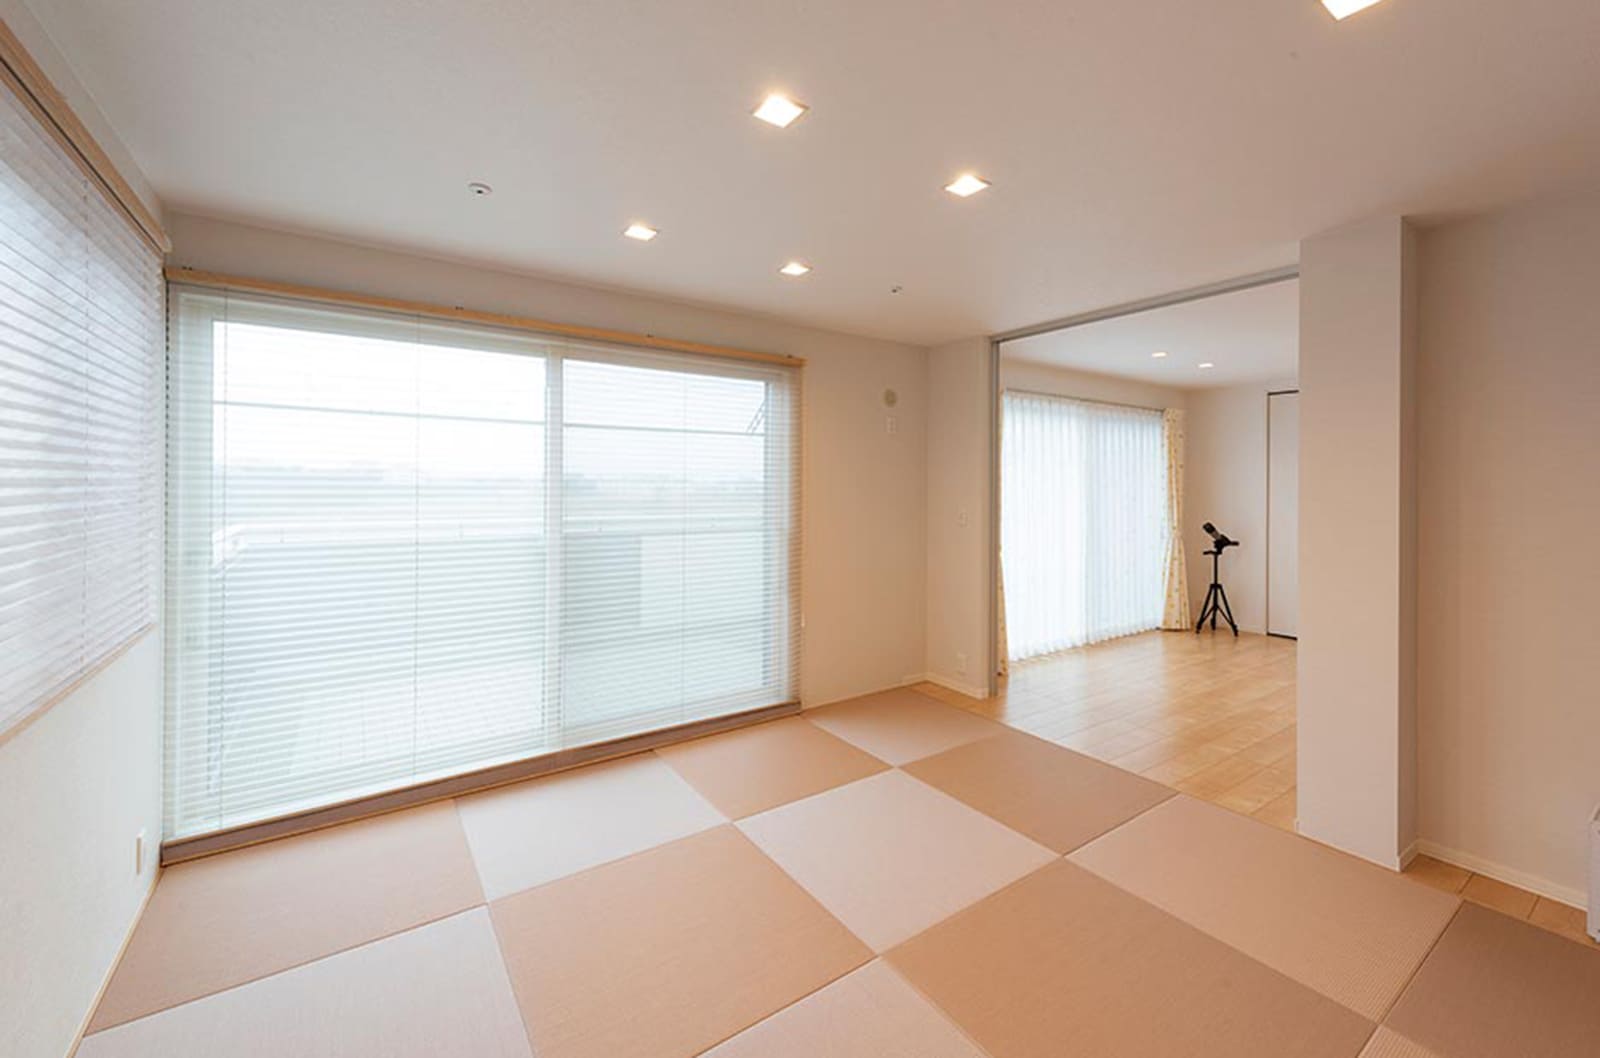 東京セキスイハイム建築実例_お孫様がのびのびと遊べるプレイルームと寝室